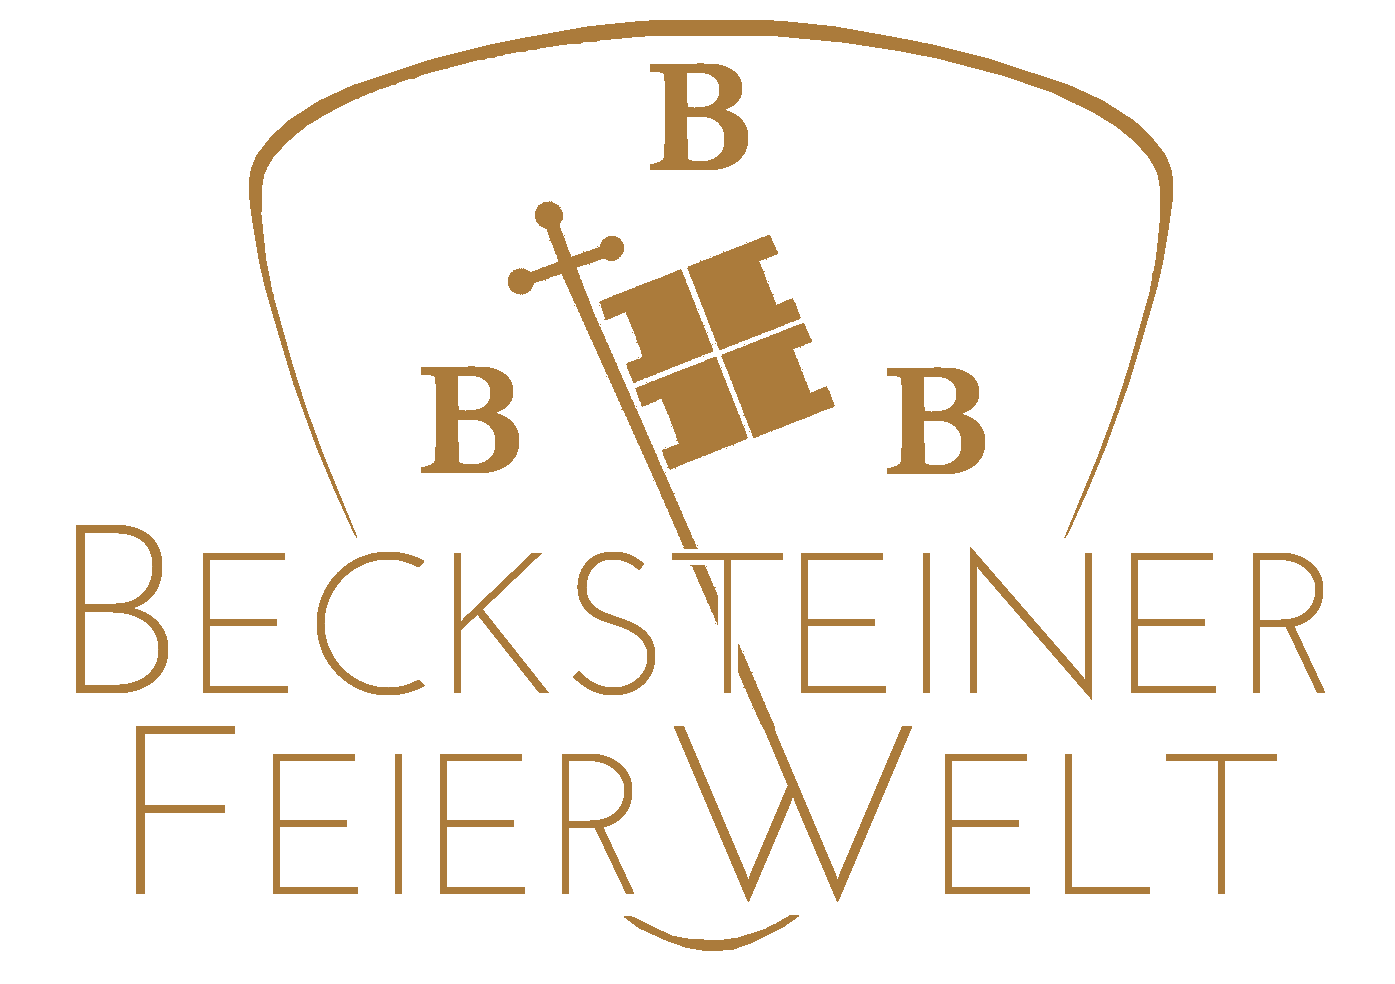 Becksteiner FeierWelt